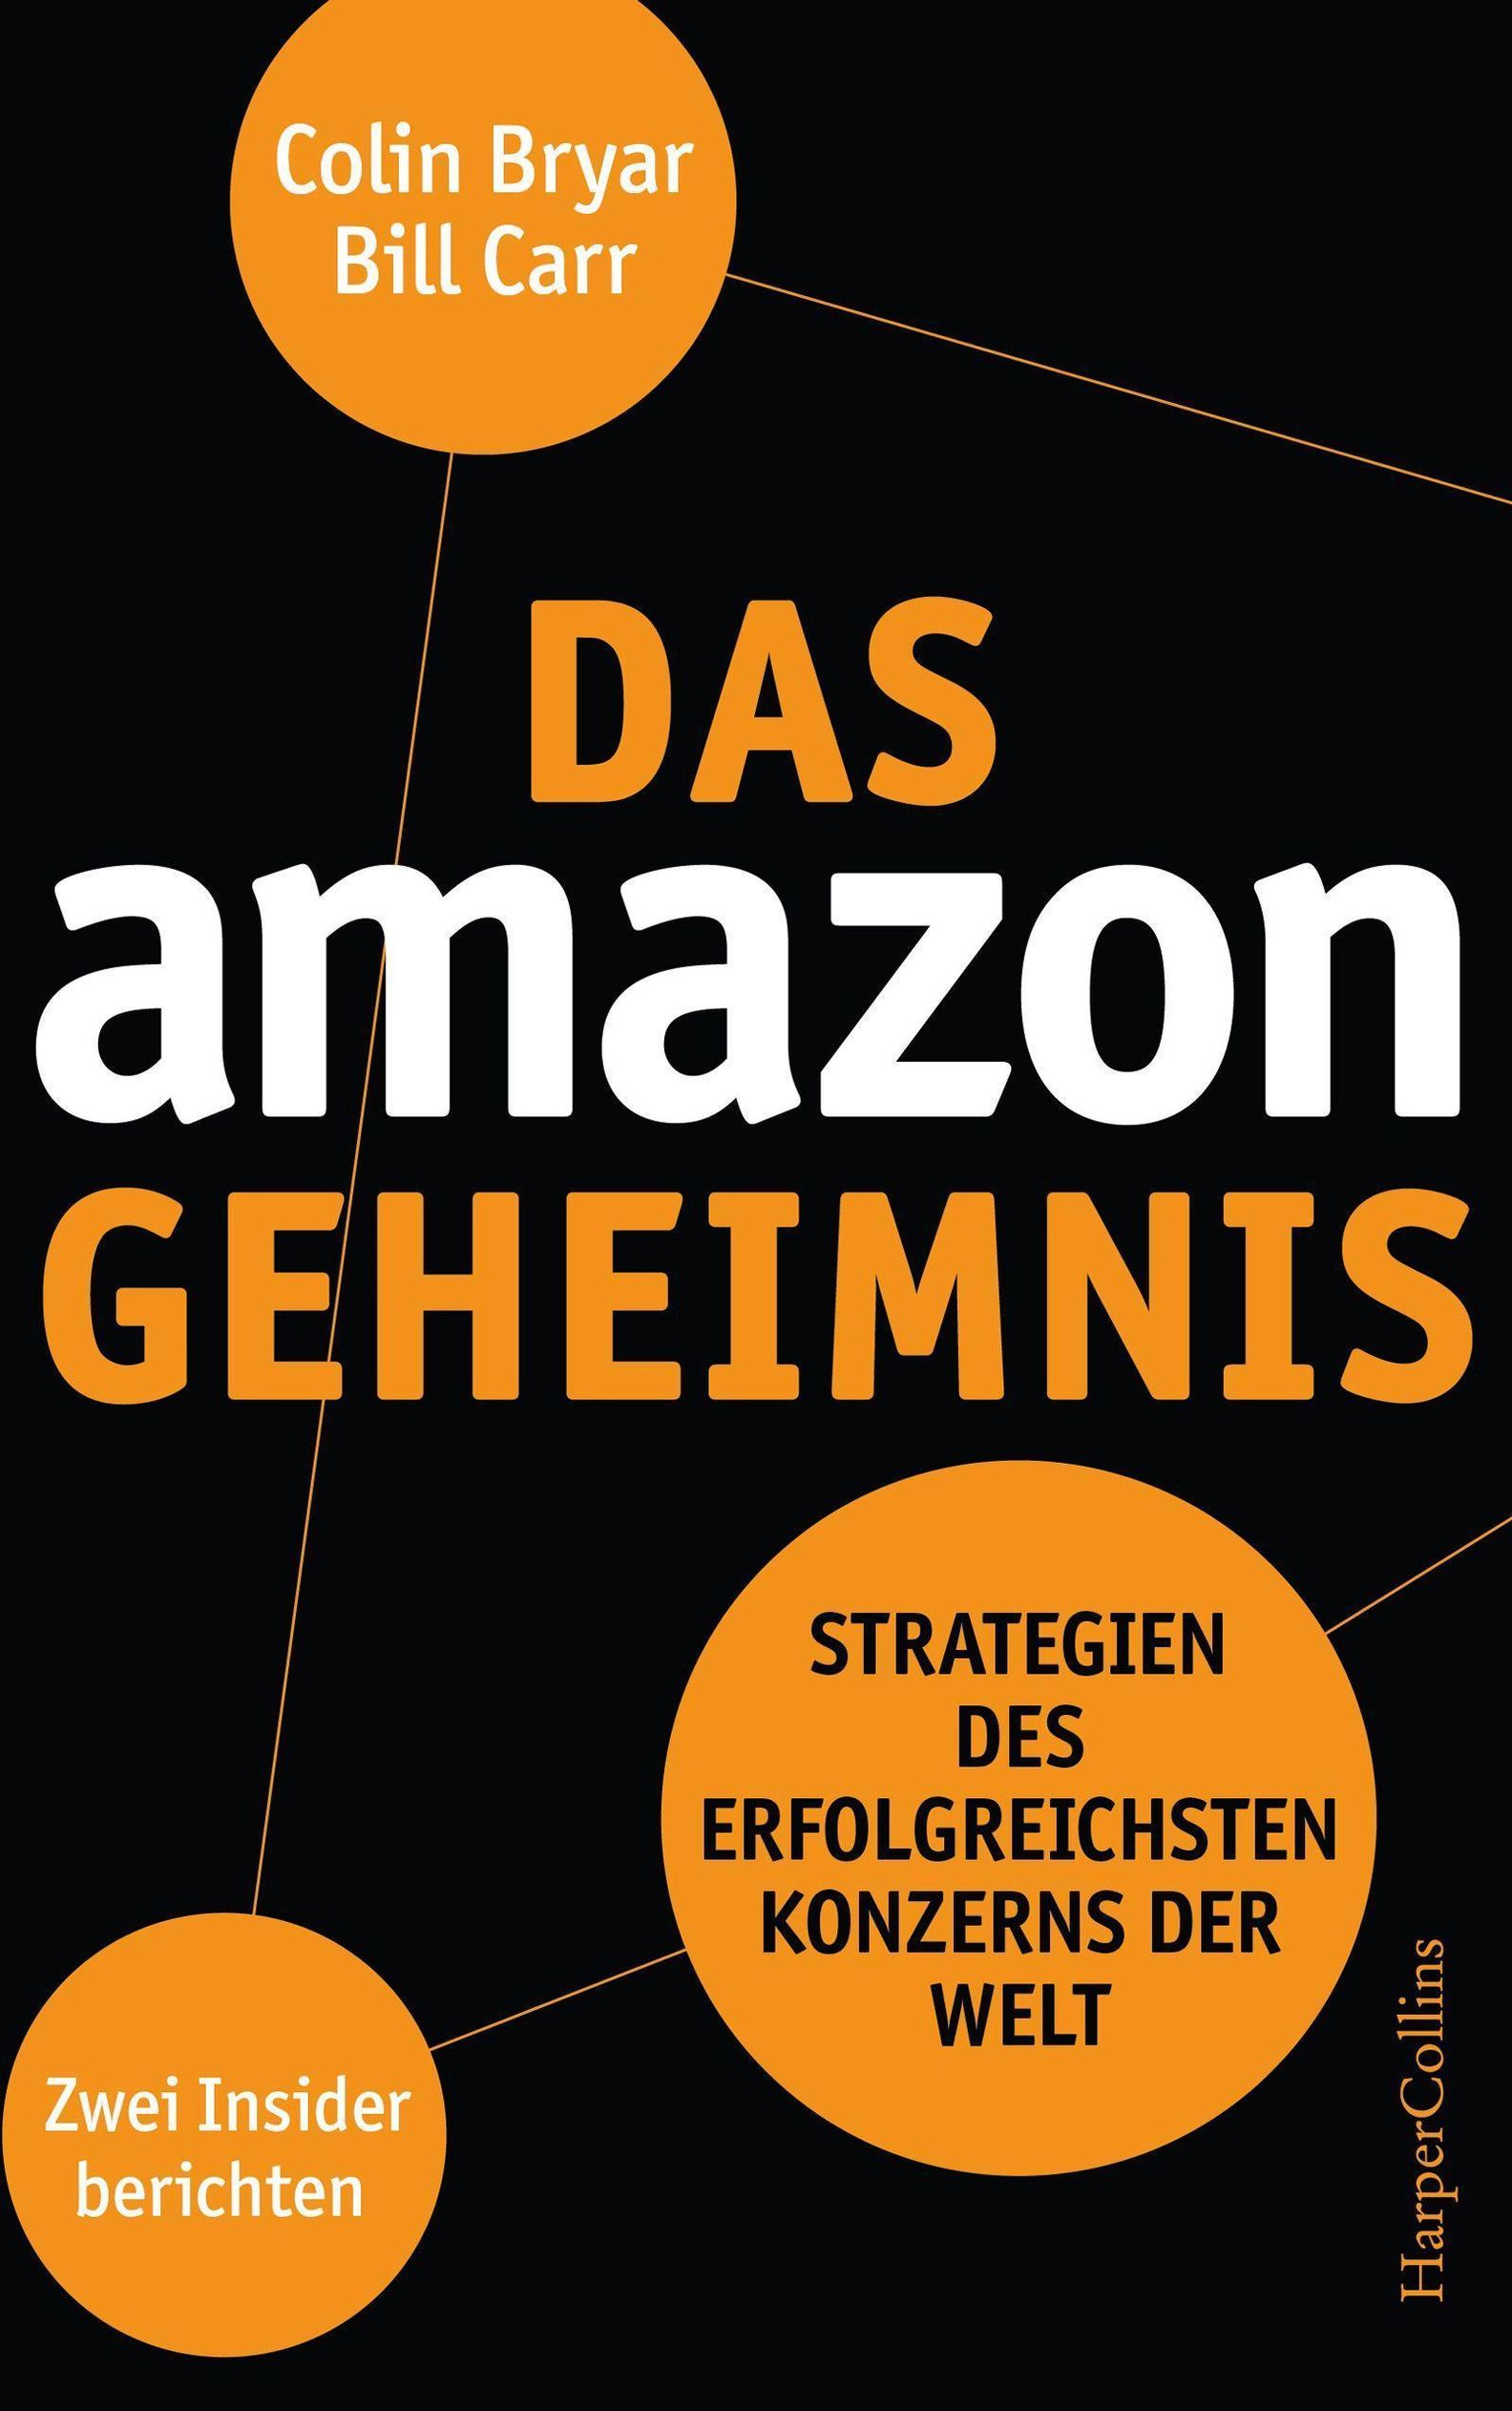 Das Amazon-Geheimnis - Strategien des erfolgreichsten Konzerns der Welt.  Zwei Insider berichten Buch